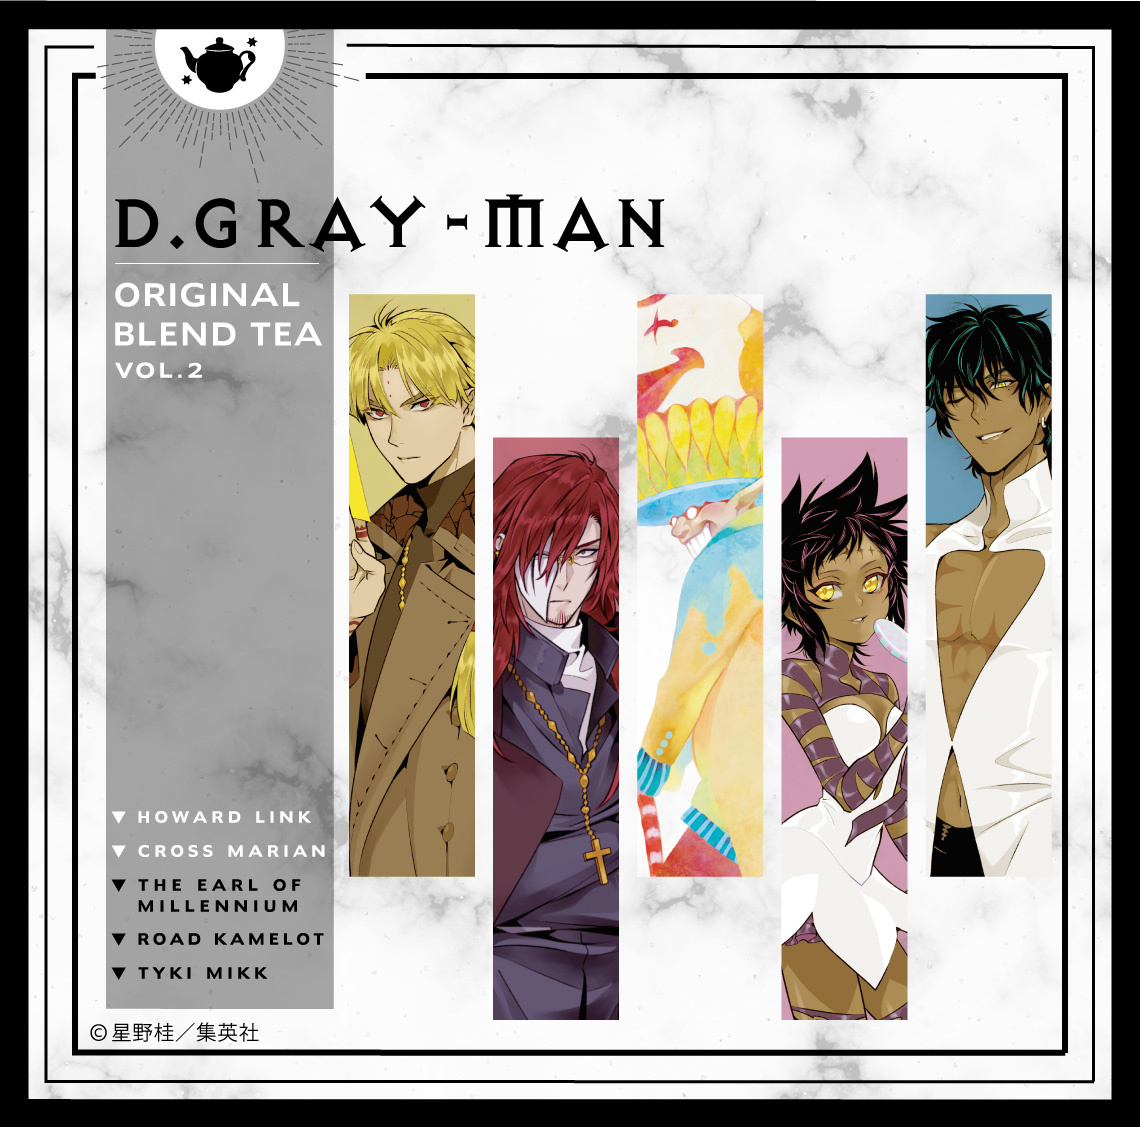 D.Gray-man BLEND TEA